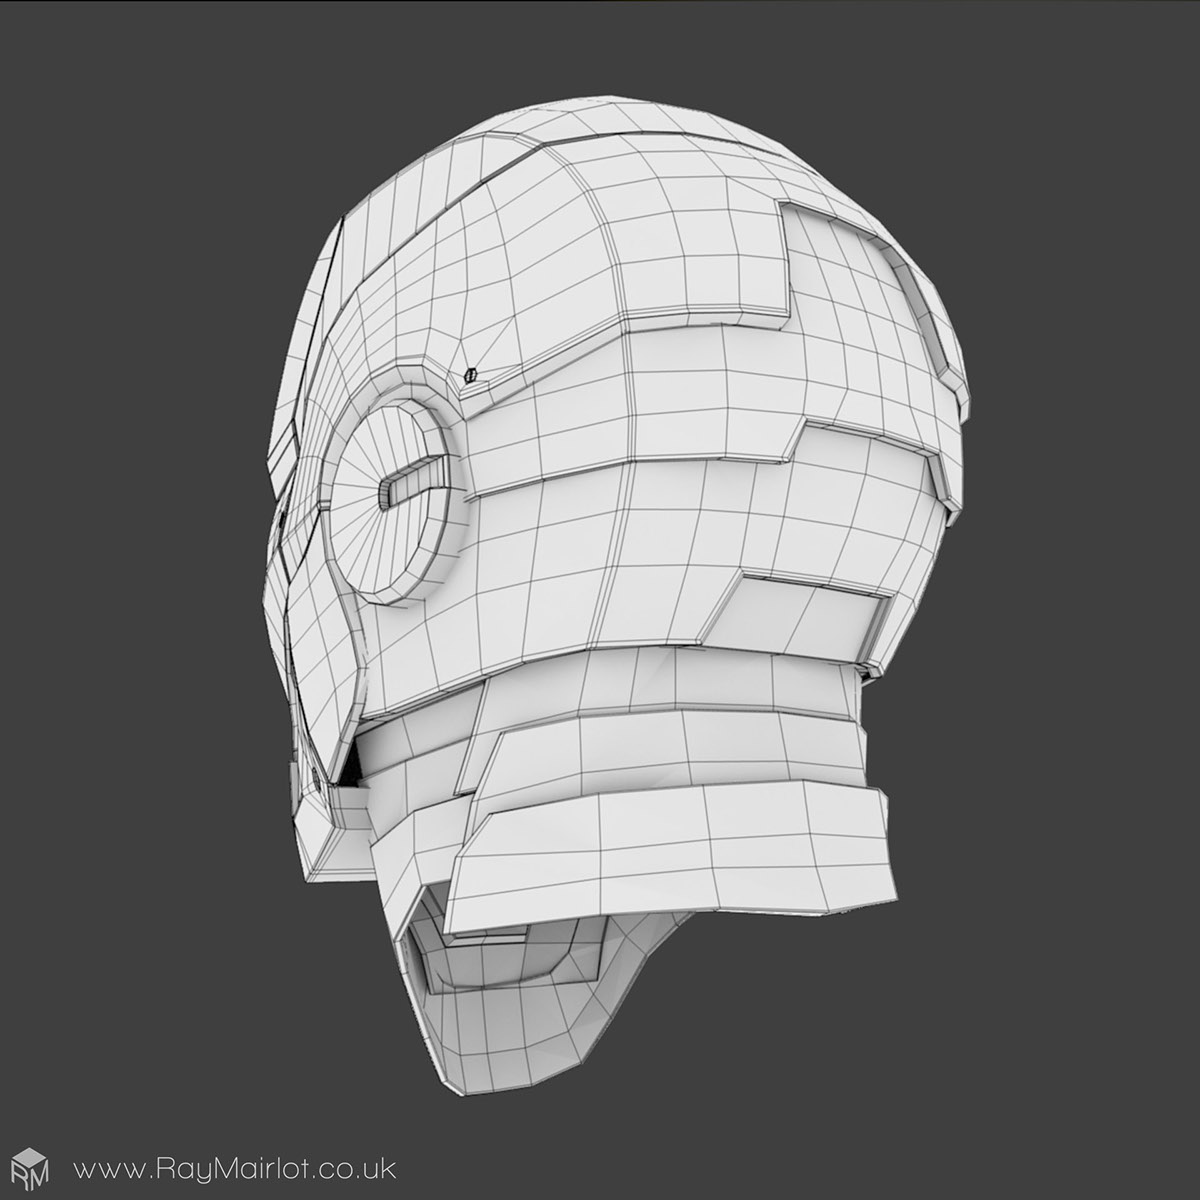 iron man head comic blender 3D cycles Render modelling CG Hero avenger Helmet Armour